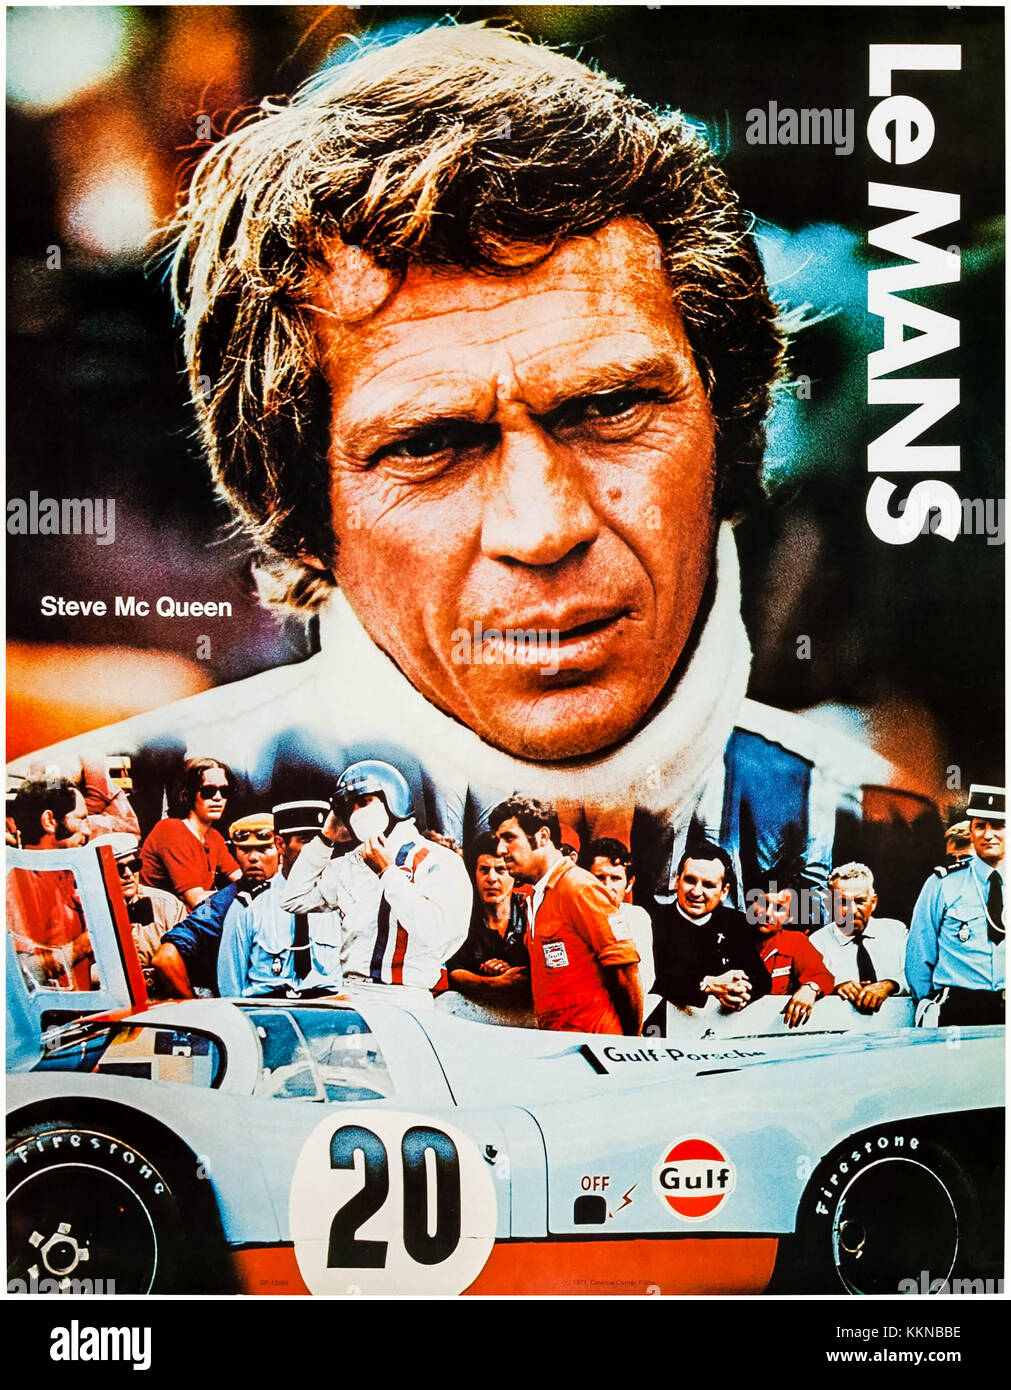 Steve McQueen als Michael Delaney im Golf Team Porsche 917. Golf Promotional Poster tie-in mit dem Film "Le Mans" (1971) von H. Lee Katzin Regie und Hauptdarsteller Steve McQueen, Siegfried Rauch und Elga Andersen. Stockfoto